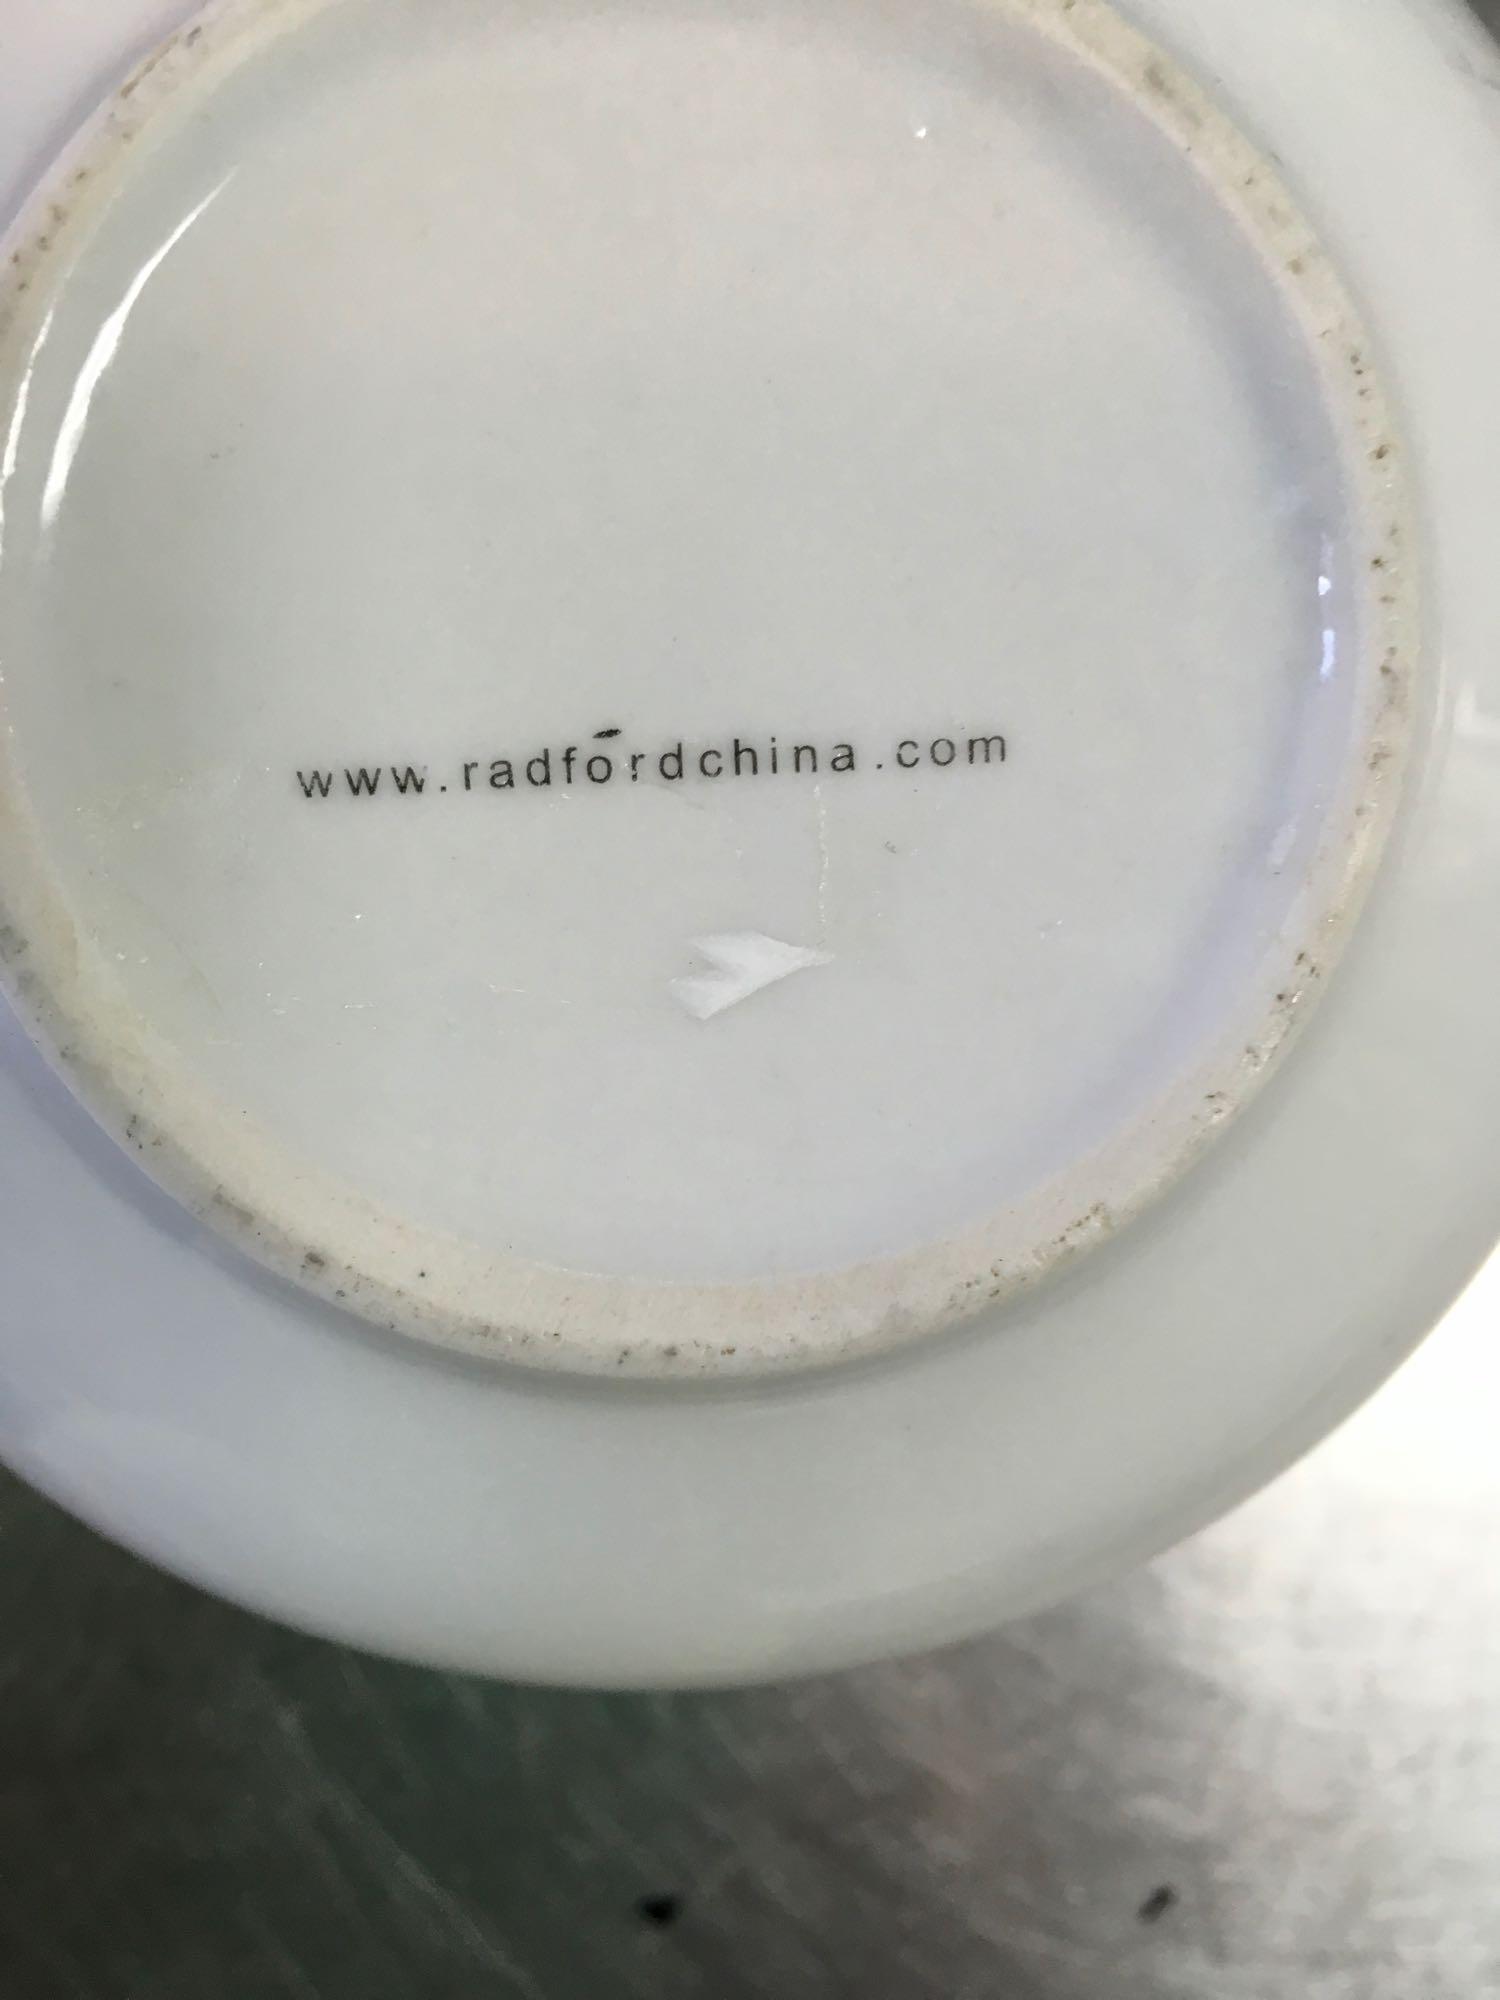 Radford China Cereal Bowls, 18 oz.